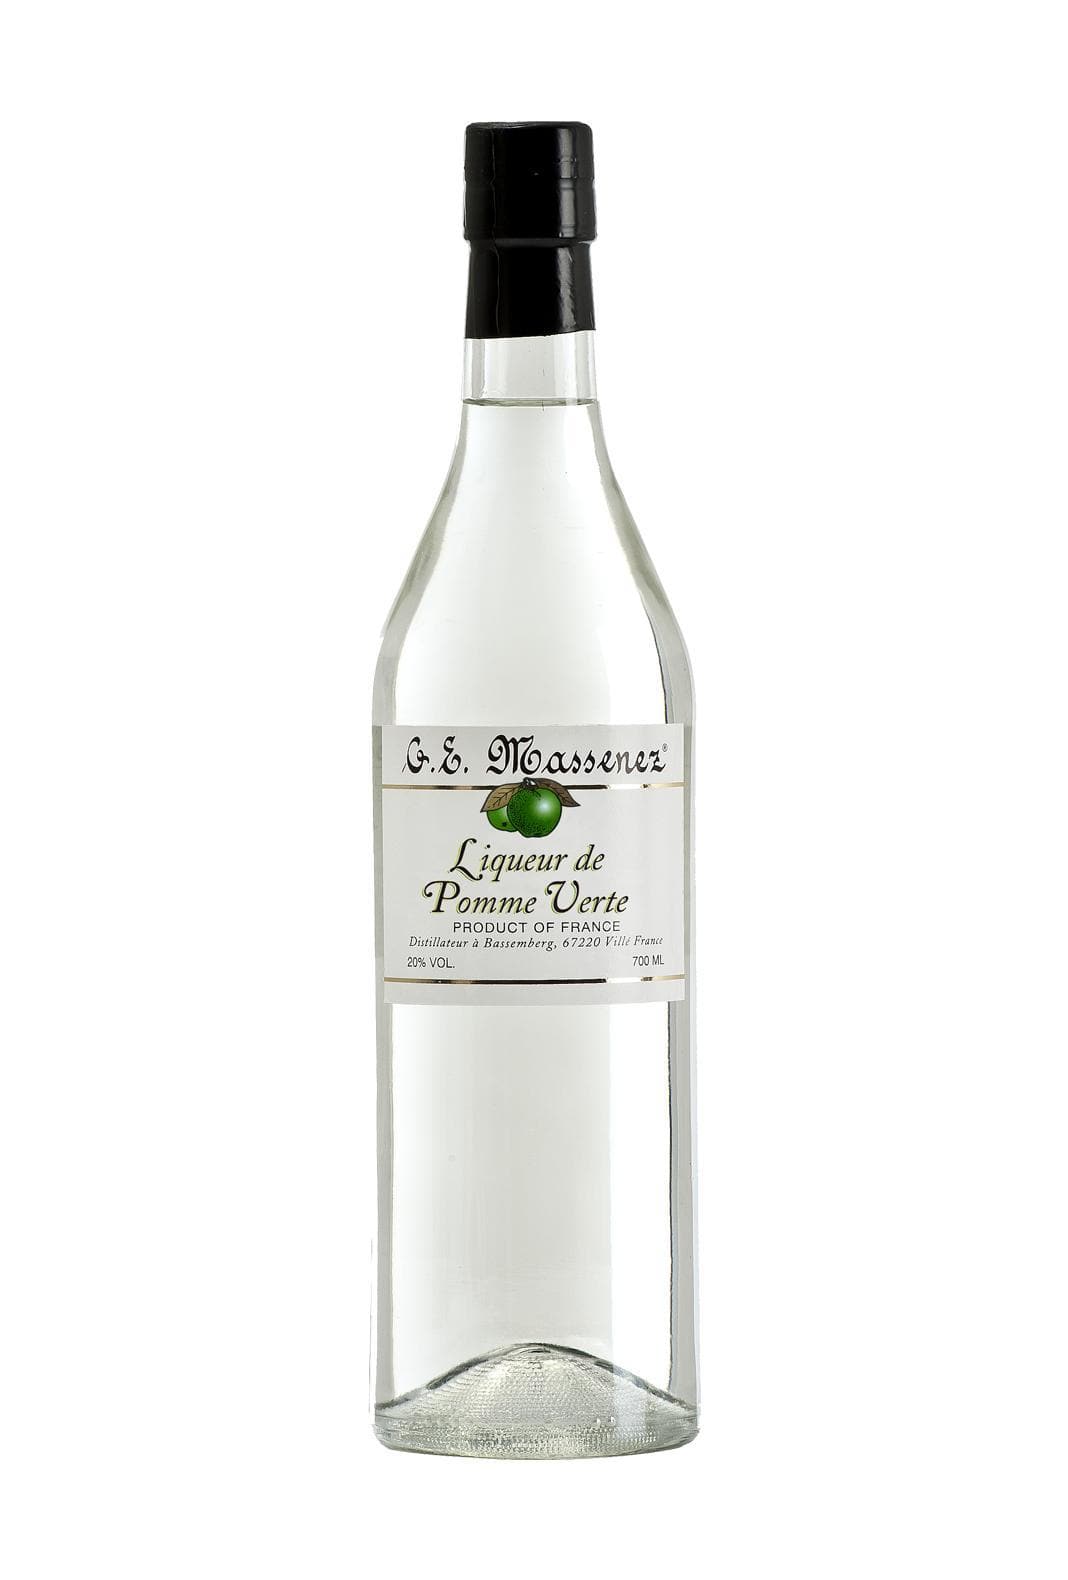 Massenez Liqueur Creme de Pomme Verte (Green Apple)18% 700ml | Liqueurs | Shop online at Spirits of France